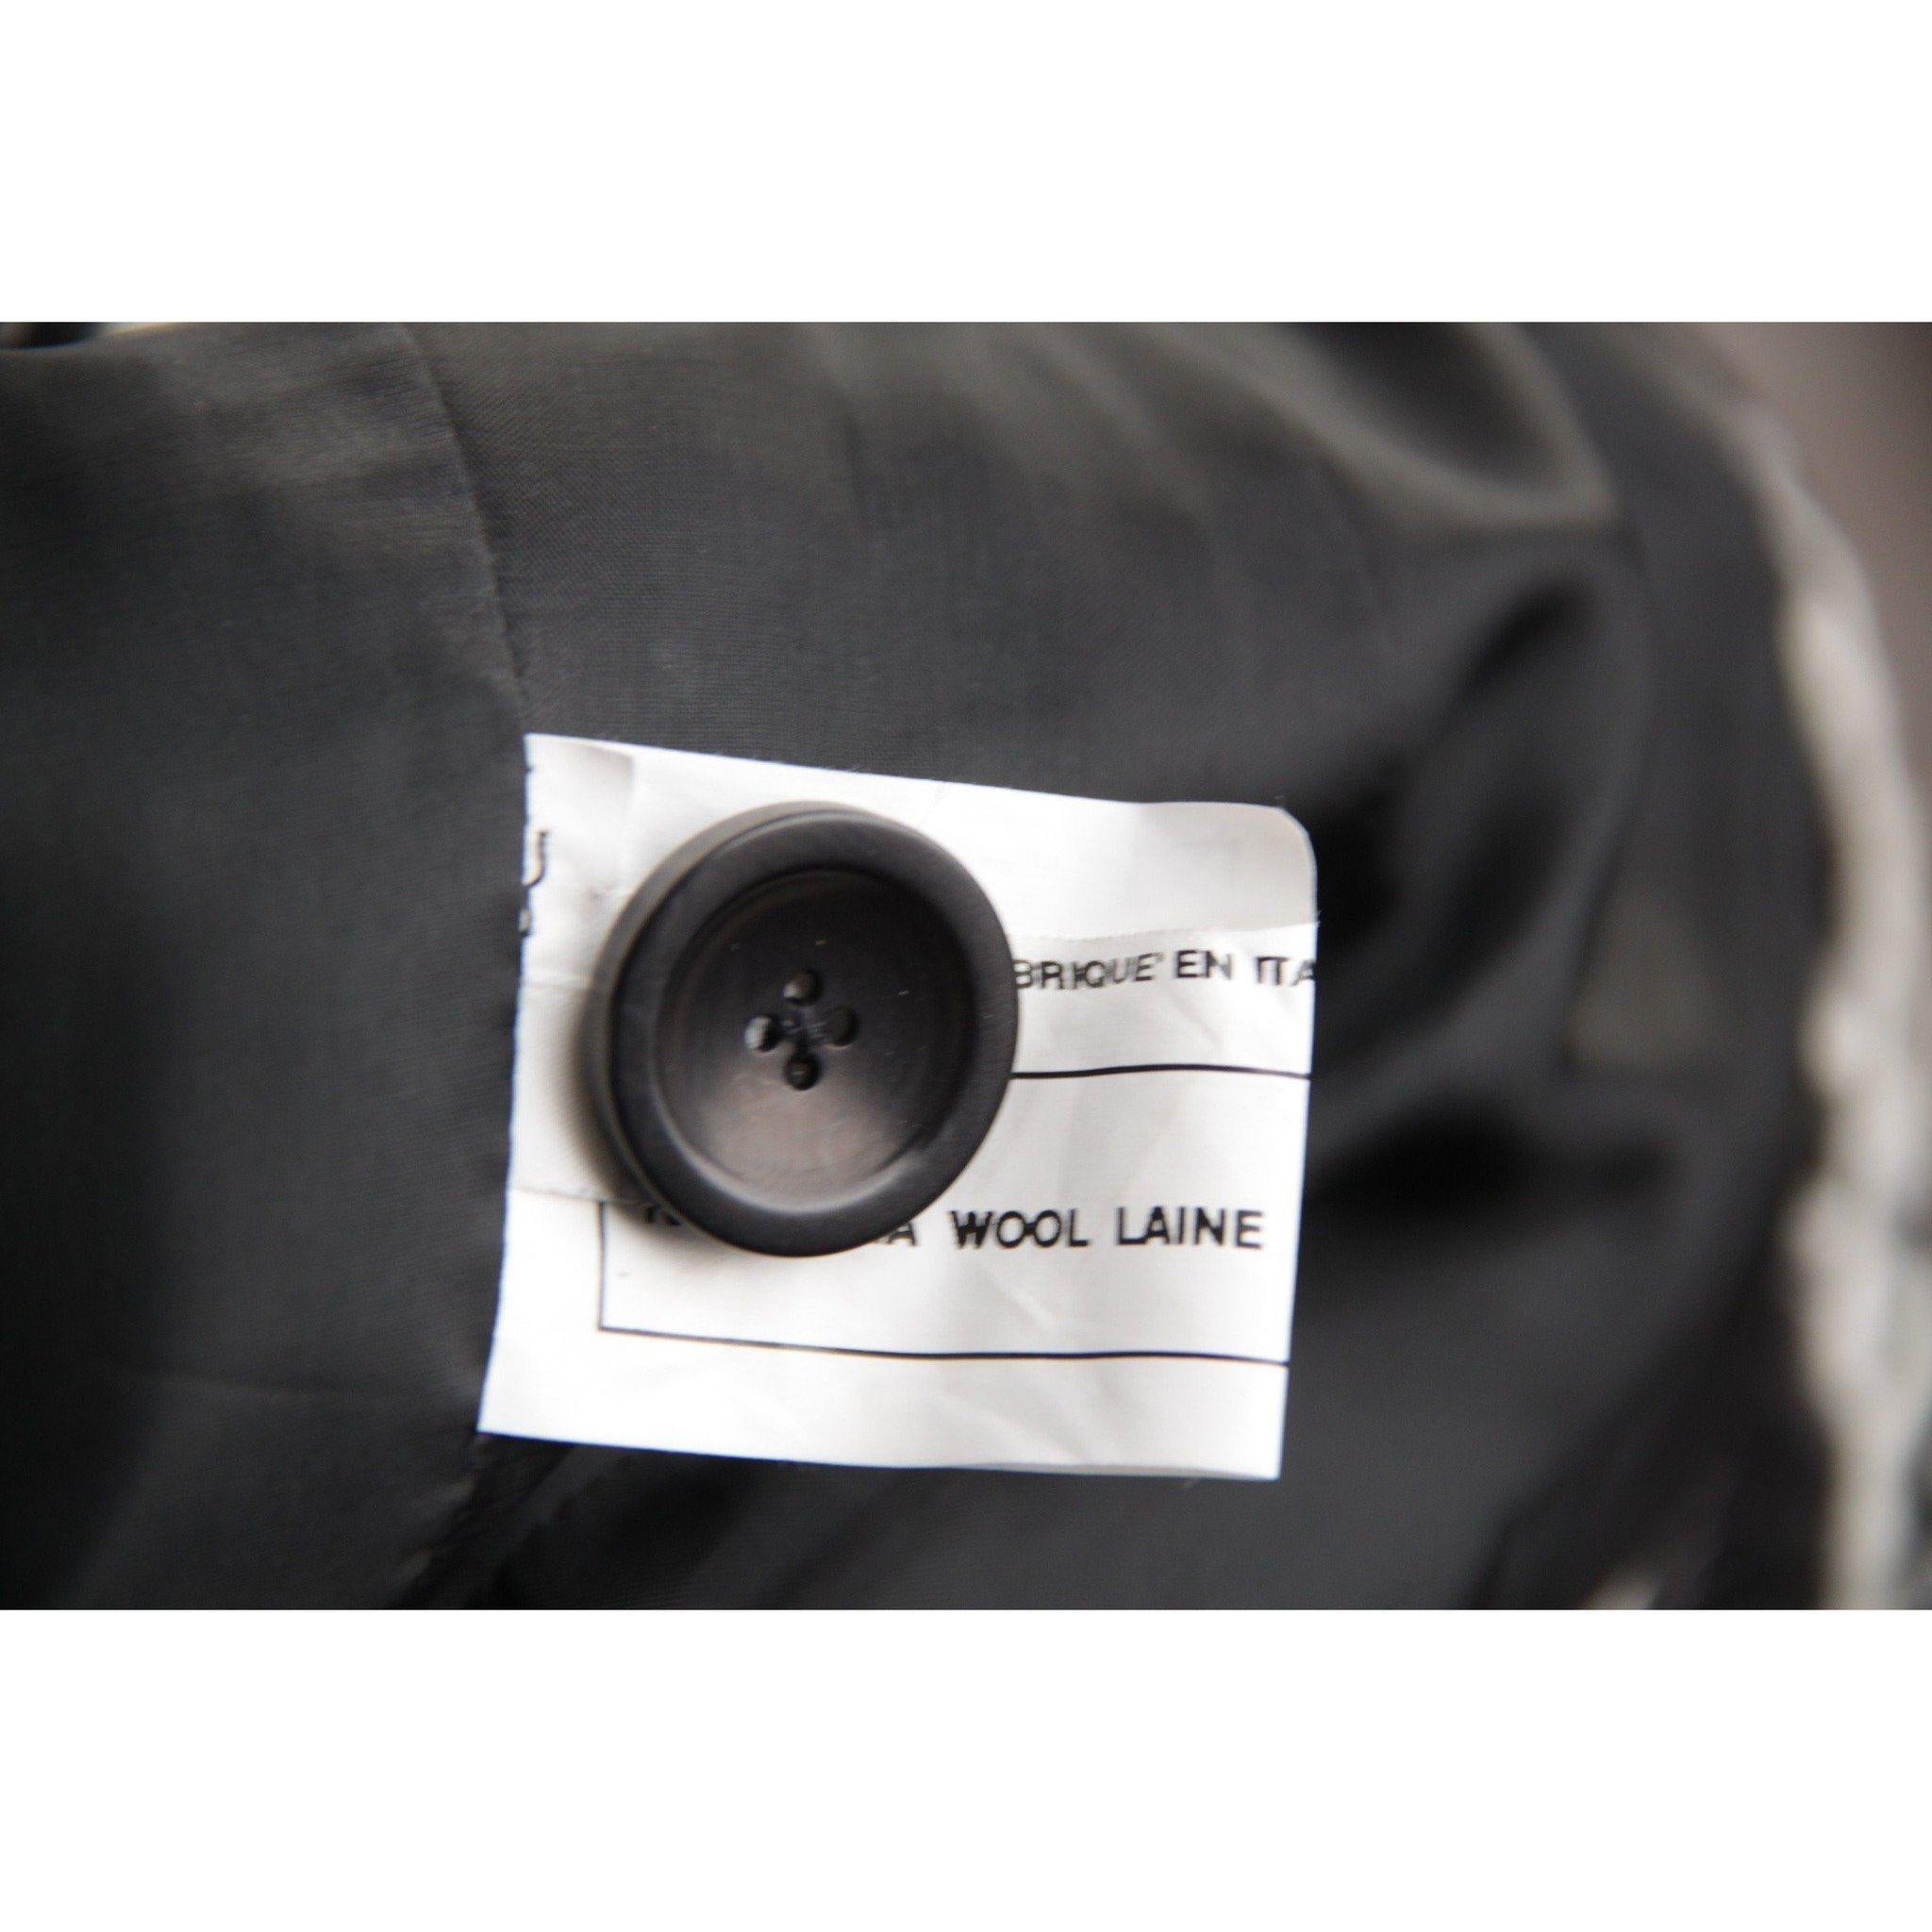 Women's BATTISTONI ROMA Black & White Wool TEXTURED BLAZER Jacket SZ 42